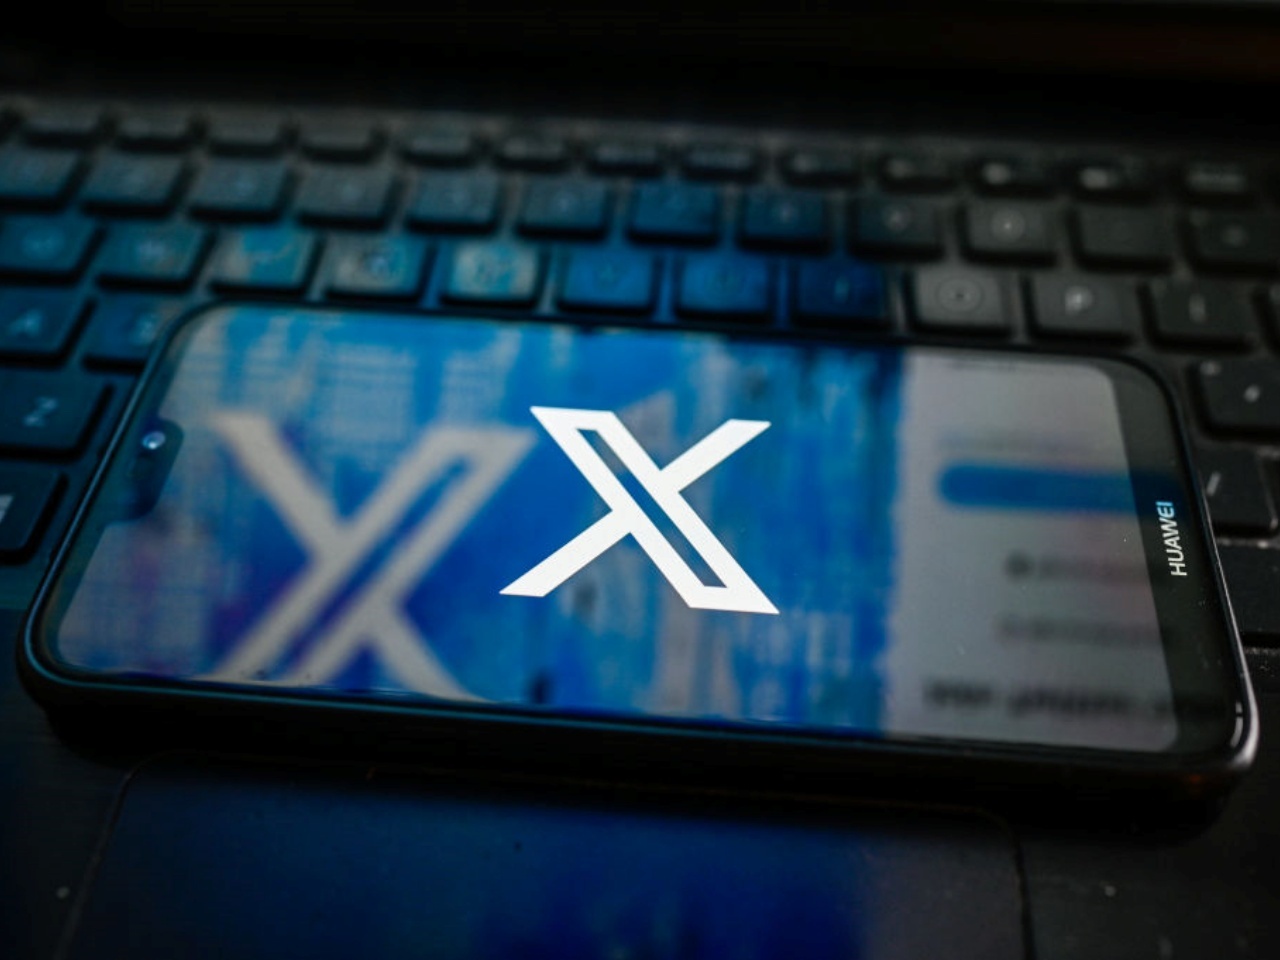 Xのロゴを表示したスマホ